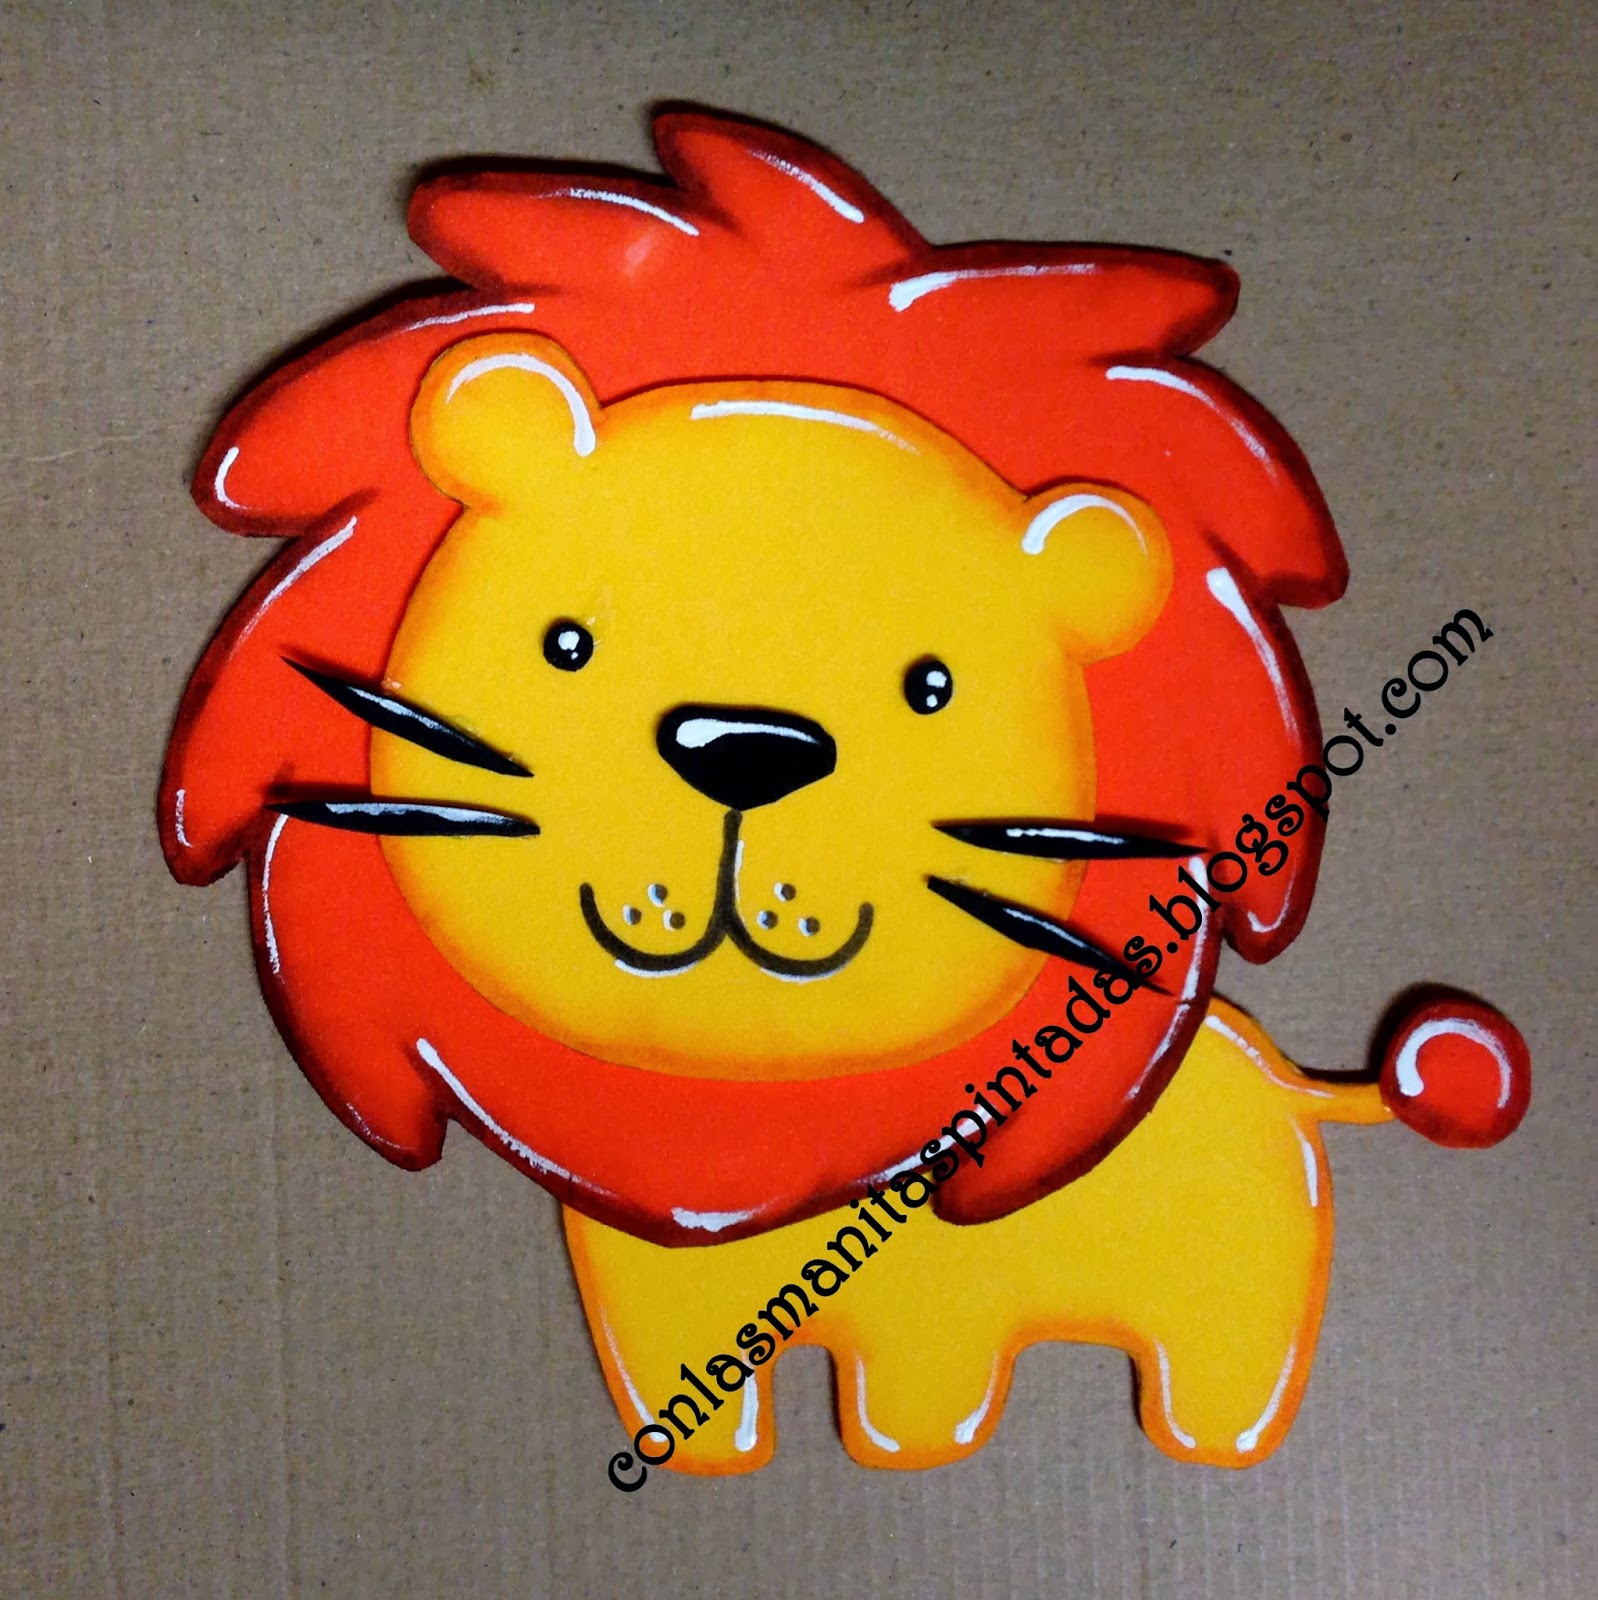 Con las manitas pintadas: Como hacer un leon de goma EVA (foamy)